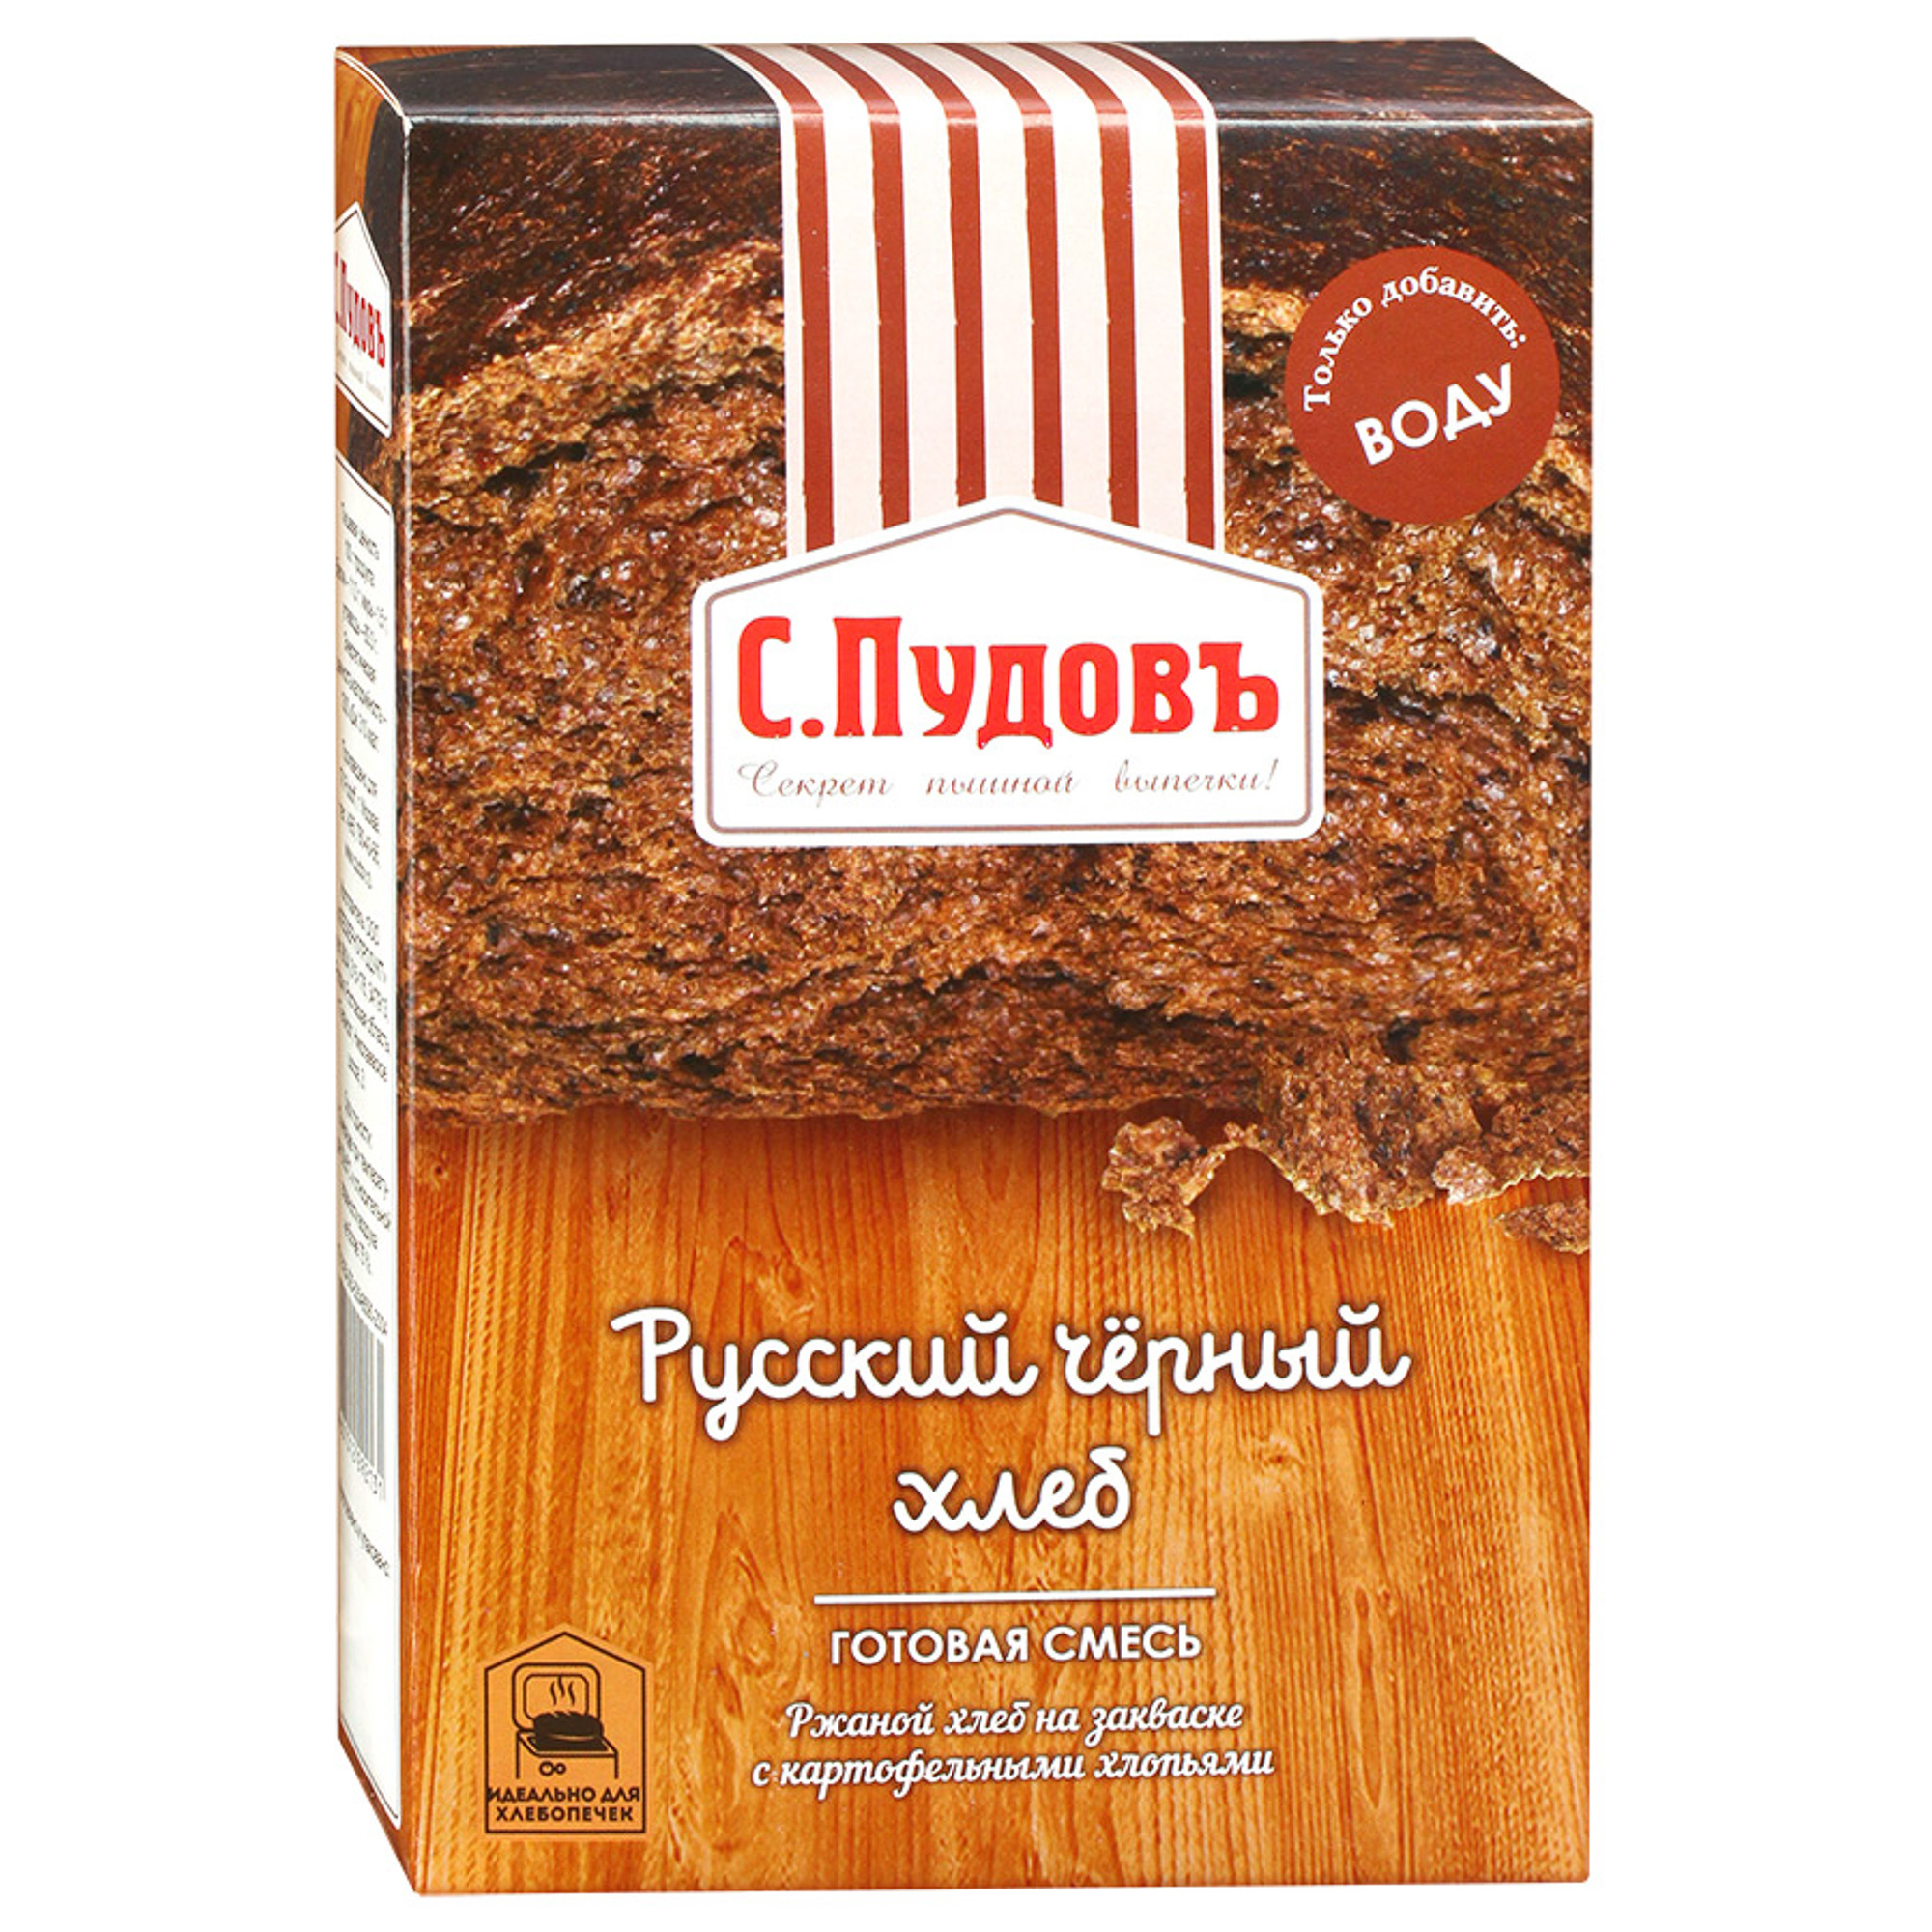 Хлебная смесь С.Пудовъ Русский черный хлеб 500 г готовая хлебная смесь сладкий яичный хлеб 0 5 кг